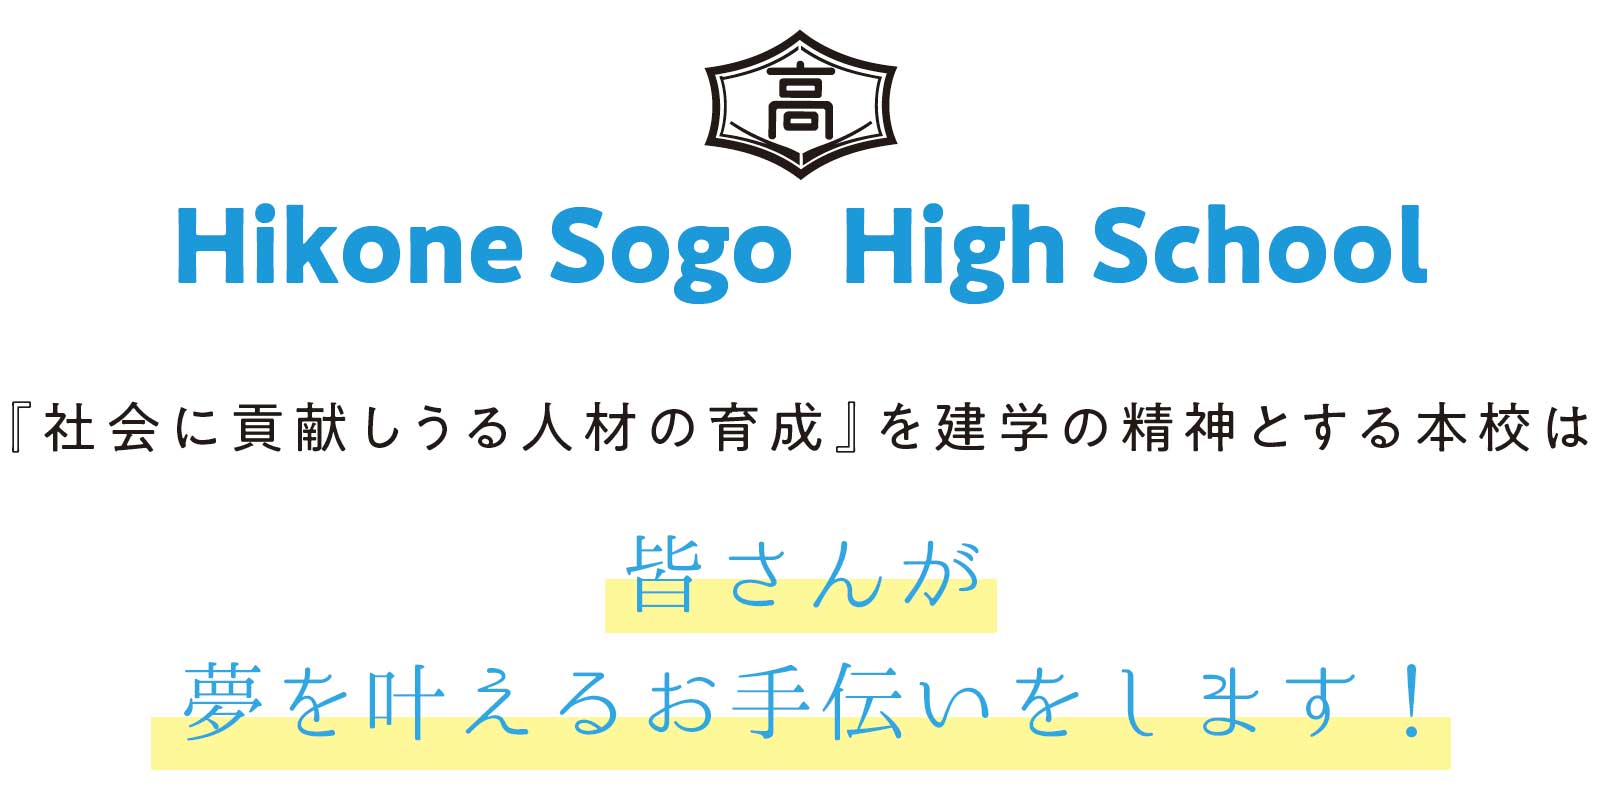 Hikone Sogo High School 『社会に貢献しうる人材の育成』を建学の精神とする本校は 　本校は、昭和２３年、戦後の女子教育に端を 発する歴史ある学校です。発足以来、『社会に 貢献しうる人材の育成』を建学の精神に掲げ てきました。平成１８年に男女共学での総合学 科を始めるにあたり、時代のニーズに即した 系列を用意し、生徒一人ひとりに対応した幅 広い選択科目を準備してきました。総合学科 に対する中学生の関心は高まり、順調に入学 生を獲得する中で募集定員を徐々に増やし、 系列の見直しも重ねてきました。また、昨年度、 フードクリエイト科からは、初めて国家資格で ある調理師免許を３５名全員が取得すること ができました。 　そして、次年度入学生からは、総合学科に新 たにスポーツエキスパート系列を加え６系列２ １０名、そして、フードクリエイト科（調理師養成 課程）３５名、合計２４５名の募集とします。スポ ーツエキスパート系列は、硬式野球とサッカ ー・ハンドボール・バドミントンに特化したもの であり、より高い目標設定で挑みたいと考え ています。 施設面に関しては、県内一を誇る製菓実習 棟（製菓実習室・バンケットホール『さくら』）を はじめ、冷暖房完備の体育館（グリーンアリー ナ）、さらに、コンピュータ室は最新の設備に入 れ替えたところです。 さらに、一昨年完成した セミナーホールに加えて、彦根総合高校生徒 寮も完成しました。現在、新規グラウンド（野球 場・サッカー場）も造成しているところです。教 室は、白を基調とした机・ロッカーを設置し、よ り質の高い授業を展開するために電子黒板を 使って日々授業改善と工夫を心がけています。 少しでも生徒の皆さんの学びを助け、わかる授 業の実践に向けて取り組んでいるところです。 　彦根総合は、「君の将来ここで見つかる」を 合い言葉として自分探しの高校生活３年間を より中身の濃い３年間となるようお手伝いし たいと強く思っています。まさしく生徒のみな さんが「大人になるための学校」としての役割 を私たちは果たしていきます。 　是非ともこの彦根総合で自らの可能性に挑 戦し、一緒に将来を見つけましょう。 理事長　松本　隆学校長　菅井 孝明 皆さんが 夢を叶えるお手伝いをします！